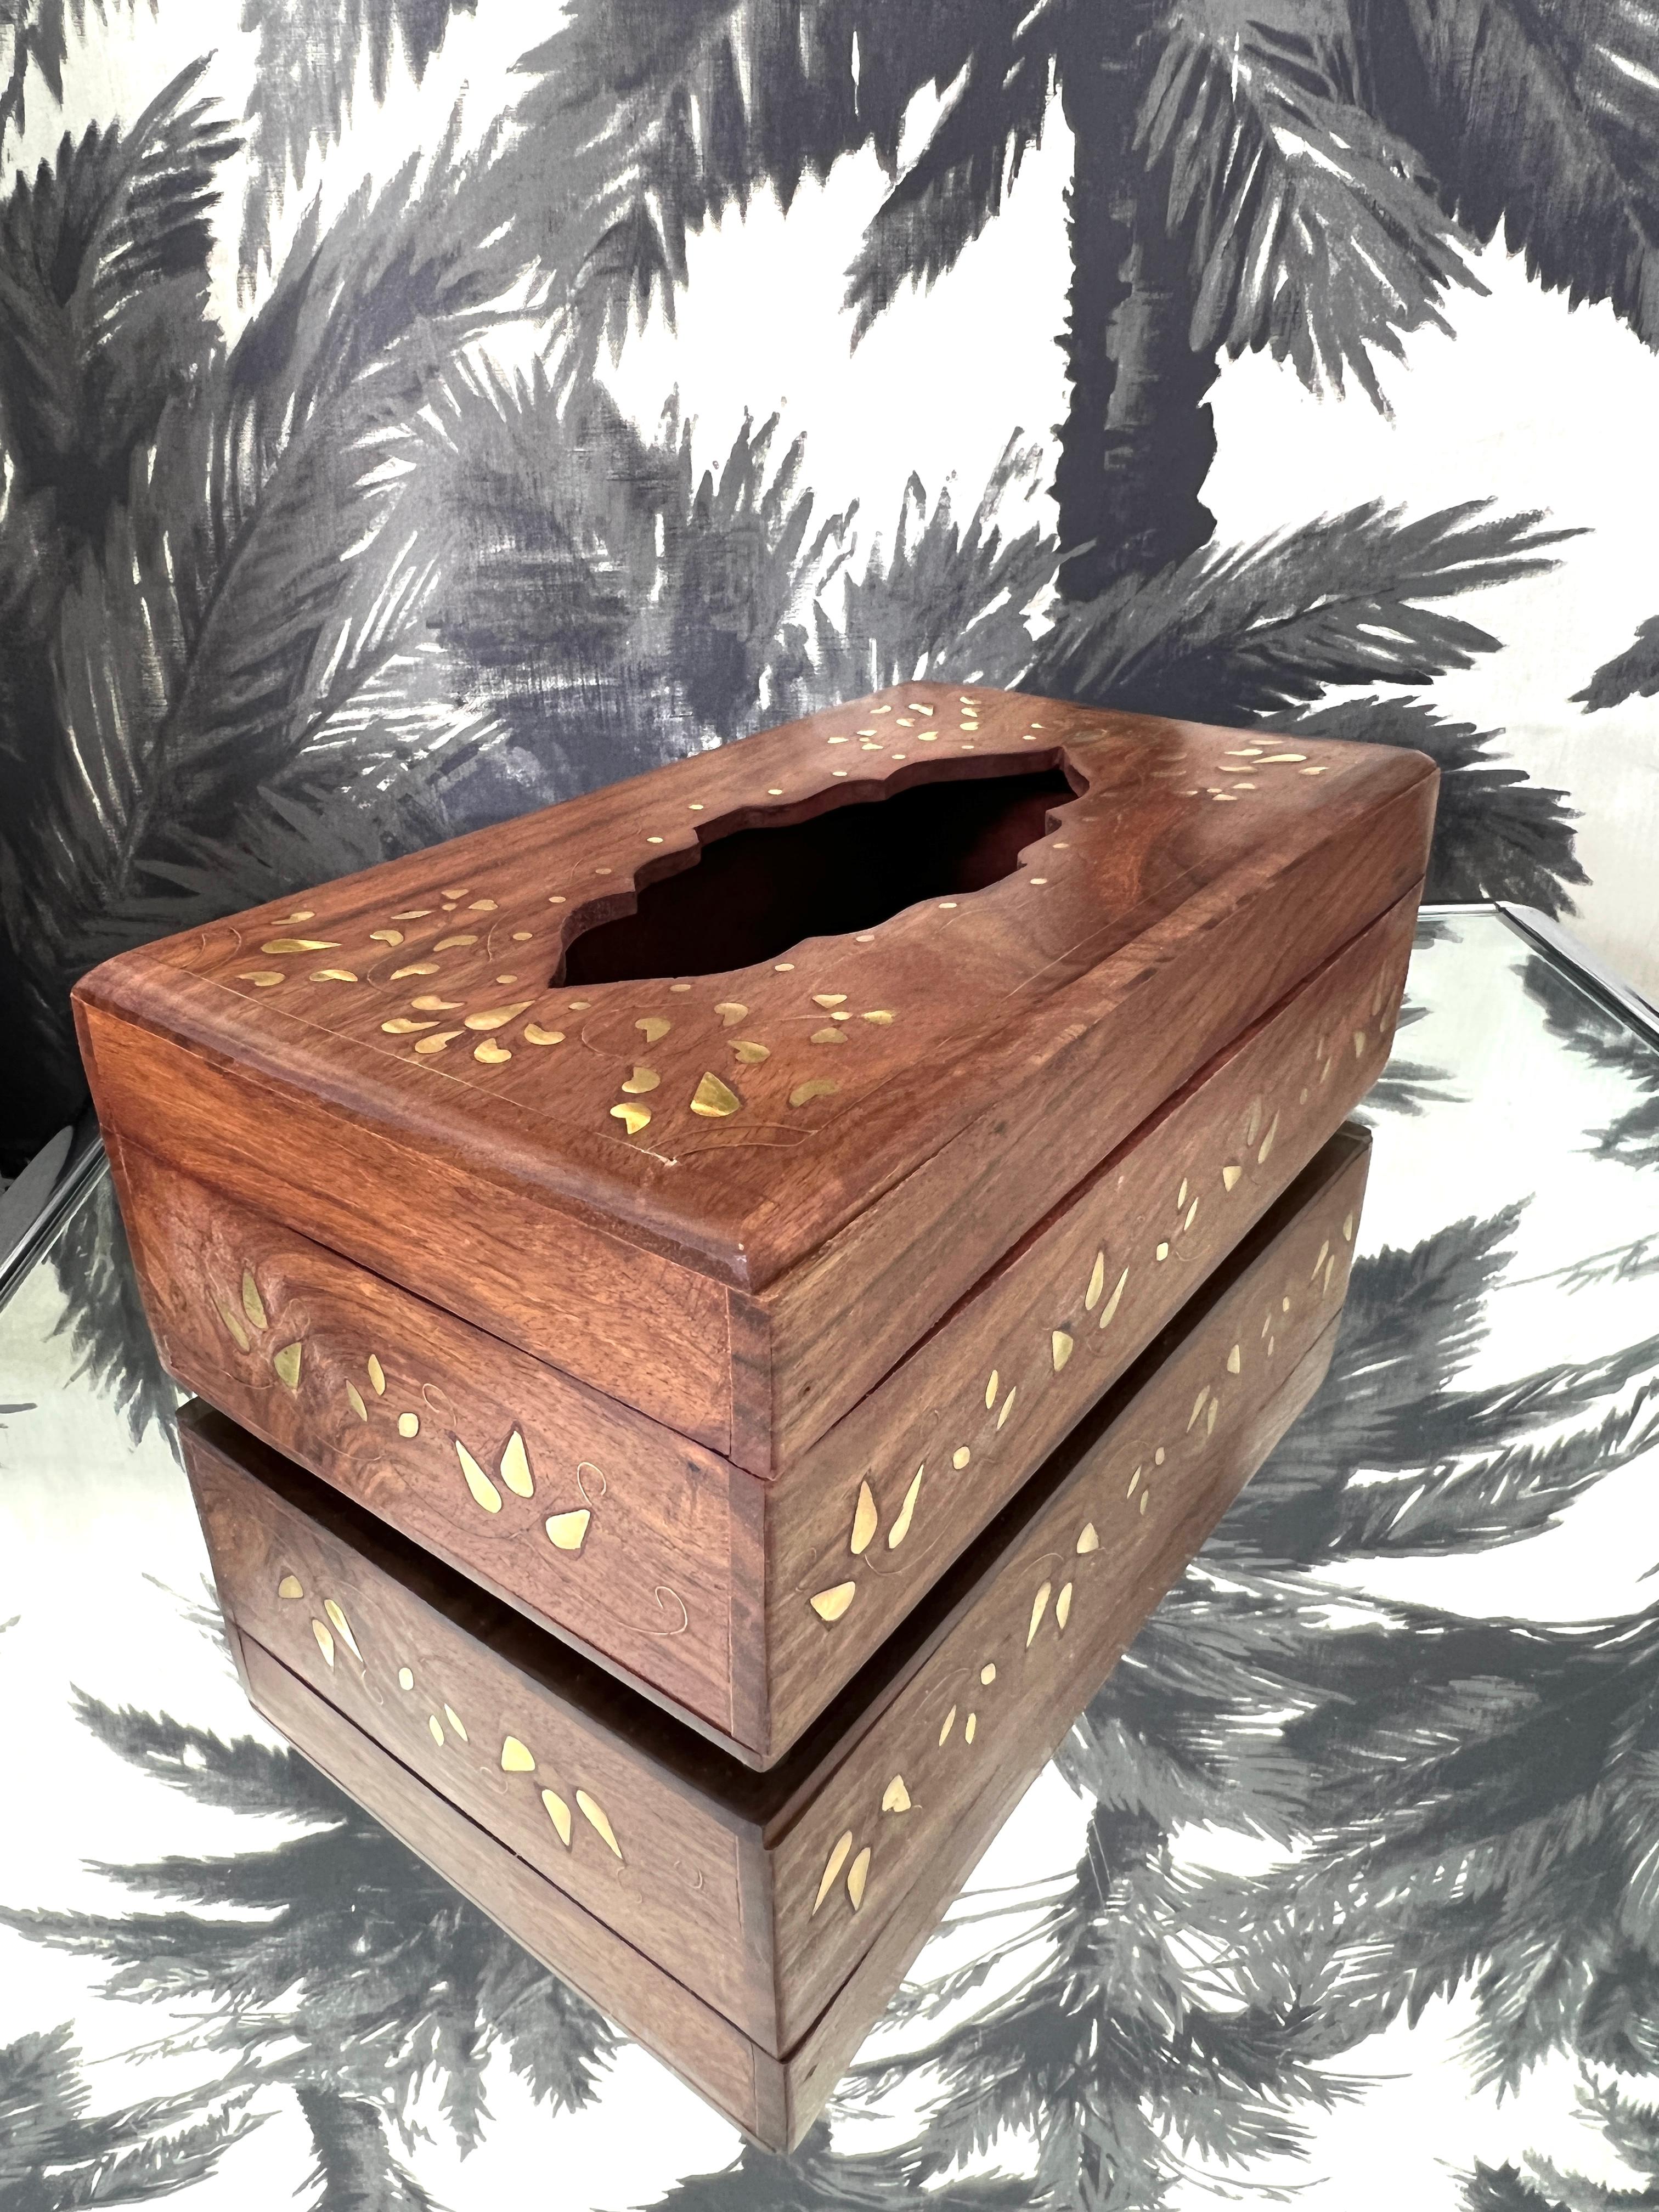 Exquisite Vintage-Taschentuchbox aus massivem Sheeshamholz mit exotischen Messingintarsien. Die von indischen Kunsthandwerkern handgefertigte Box hat eine stilisierte, handgeschnitzte Mitte mit geometrischen Intarsien aus Blattwerk, die sowohl an